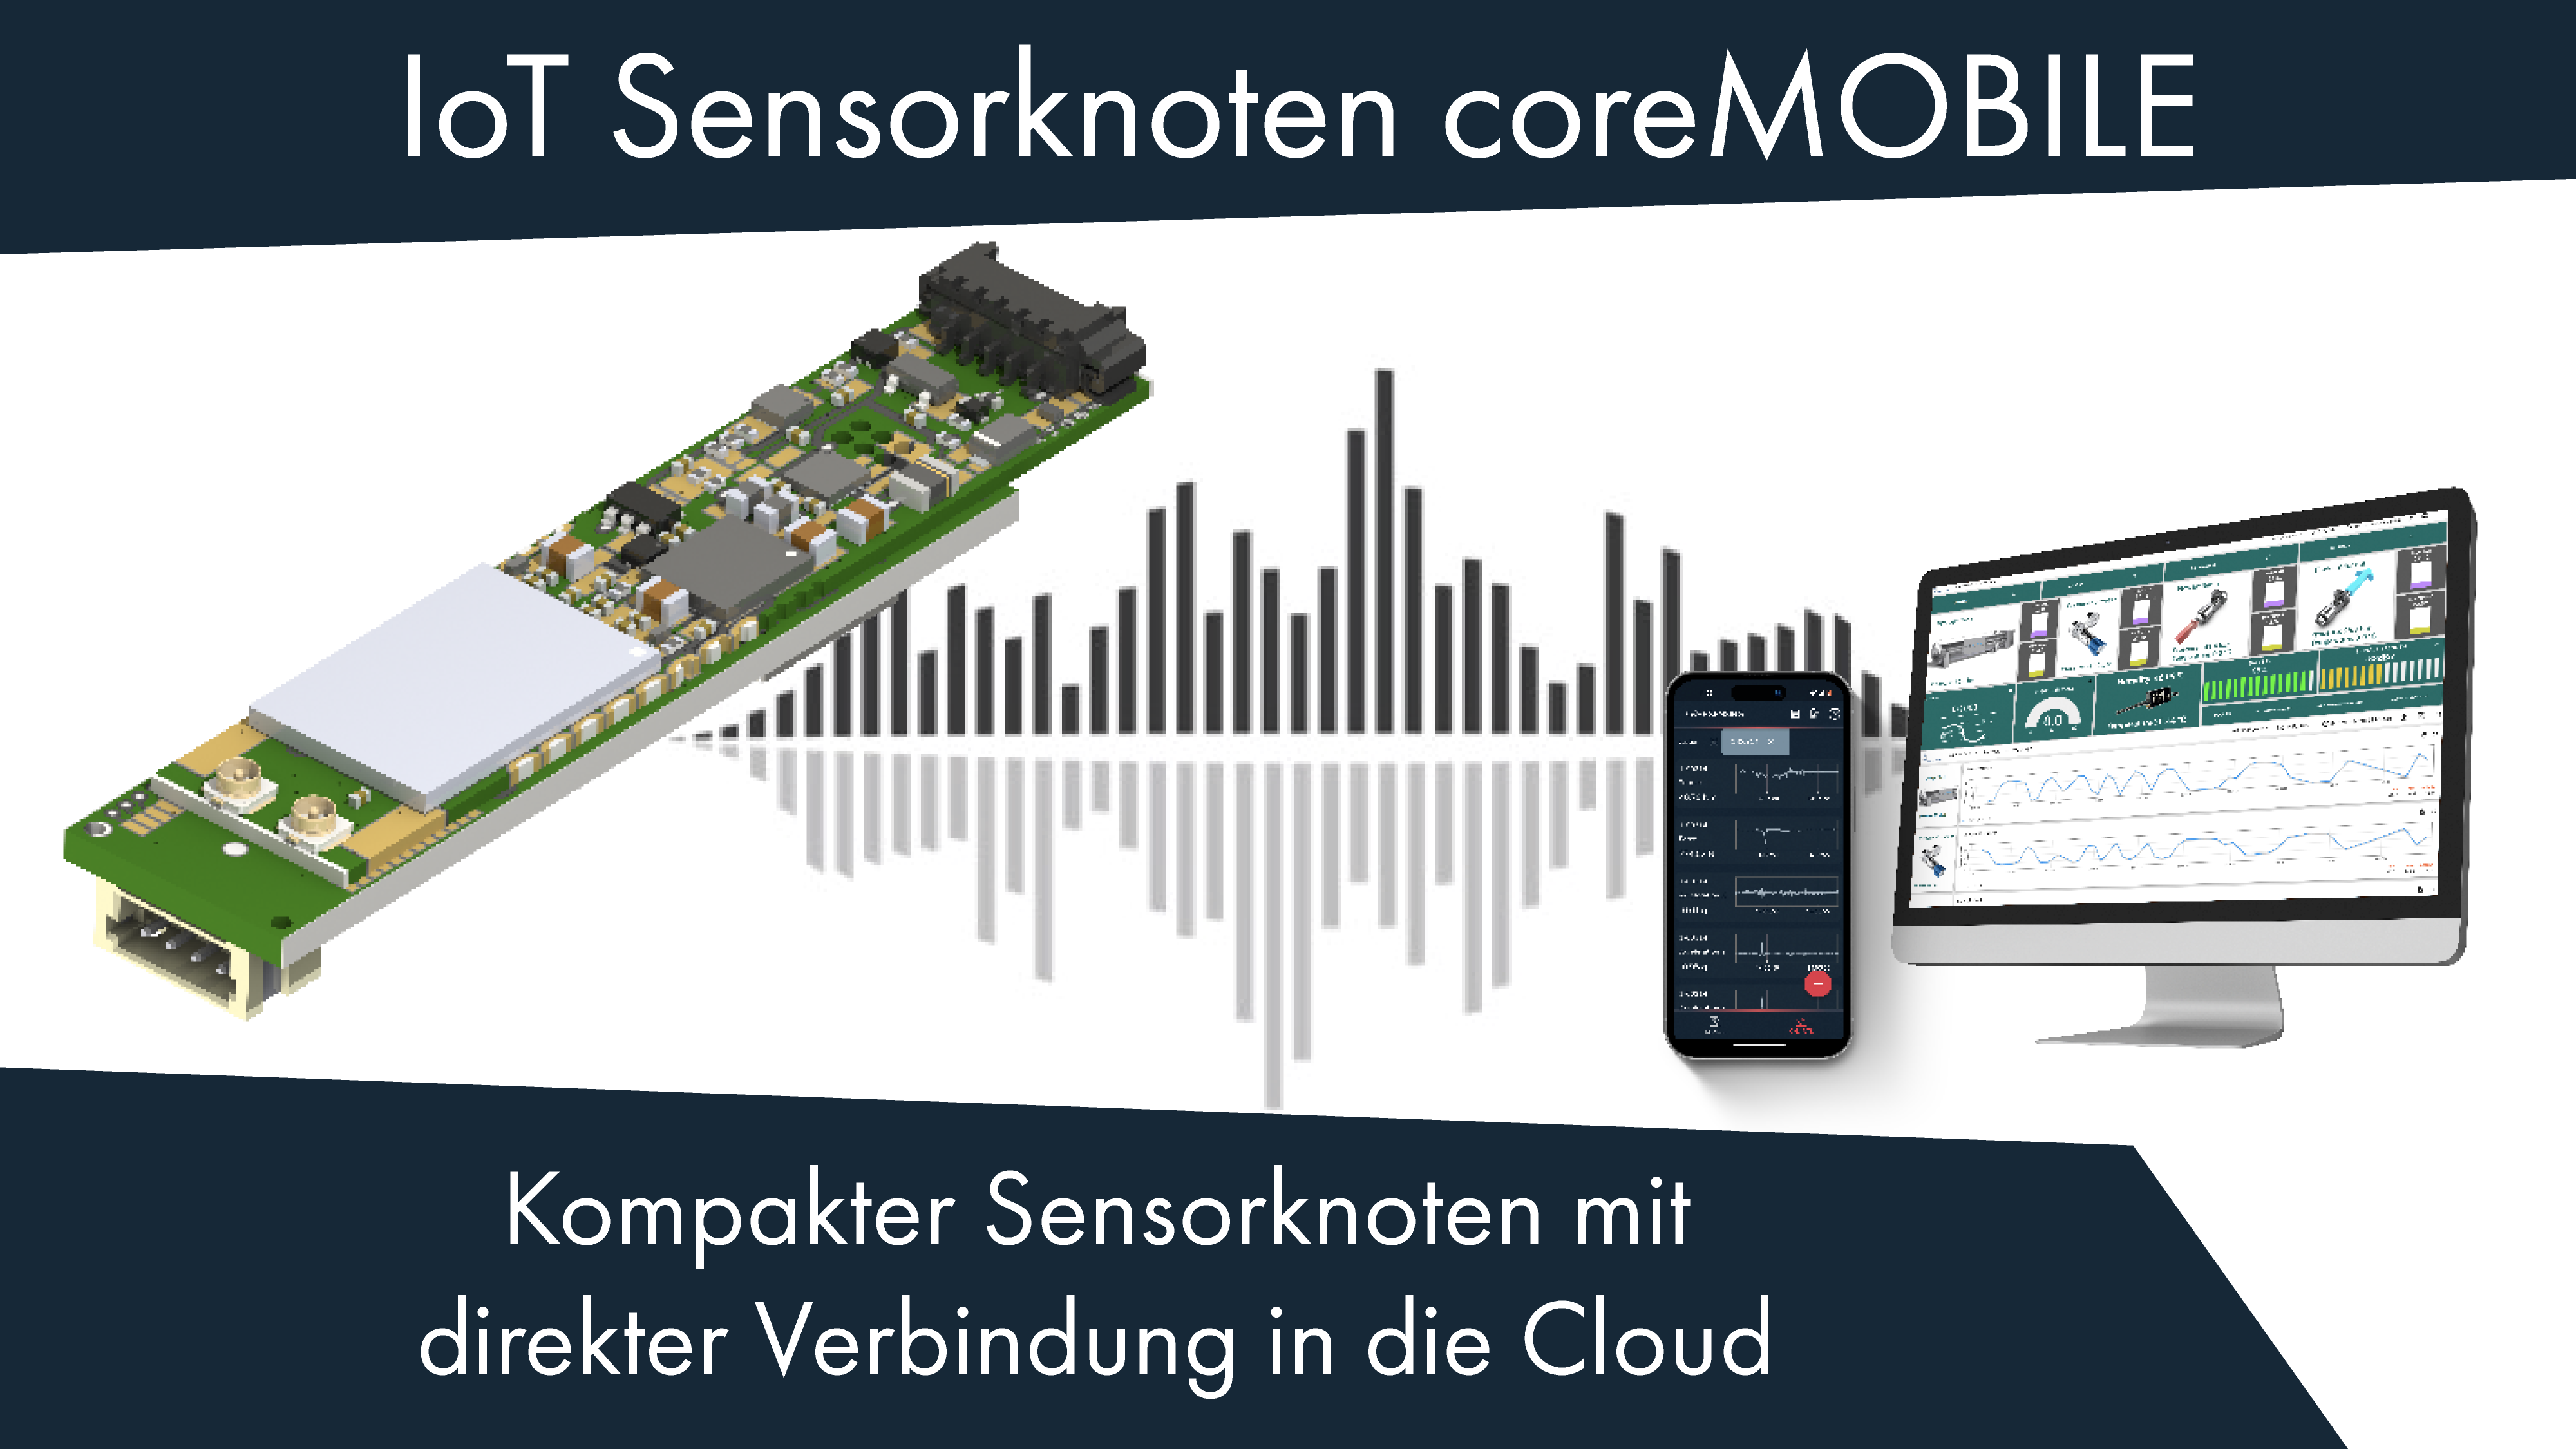 IoT Sensorknoten coreMOBILE